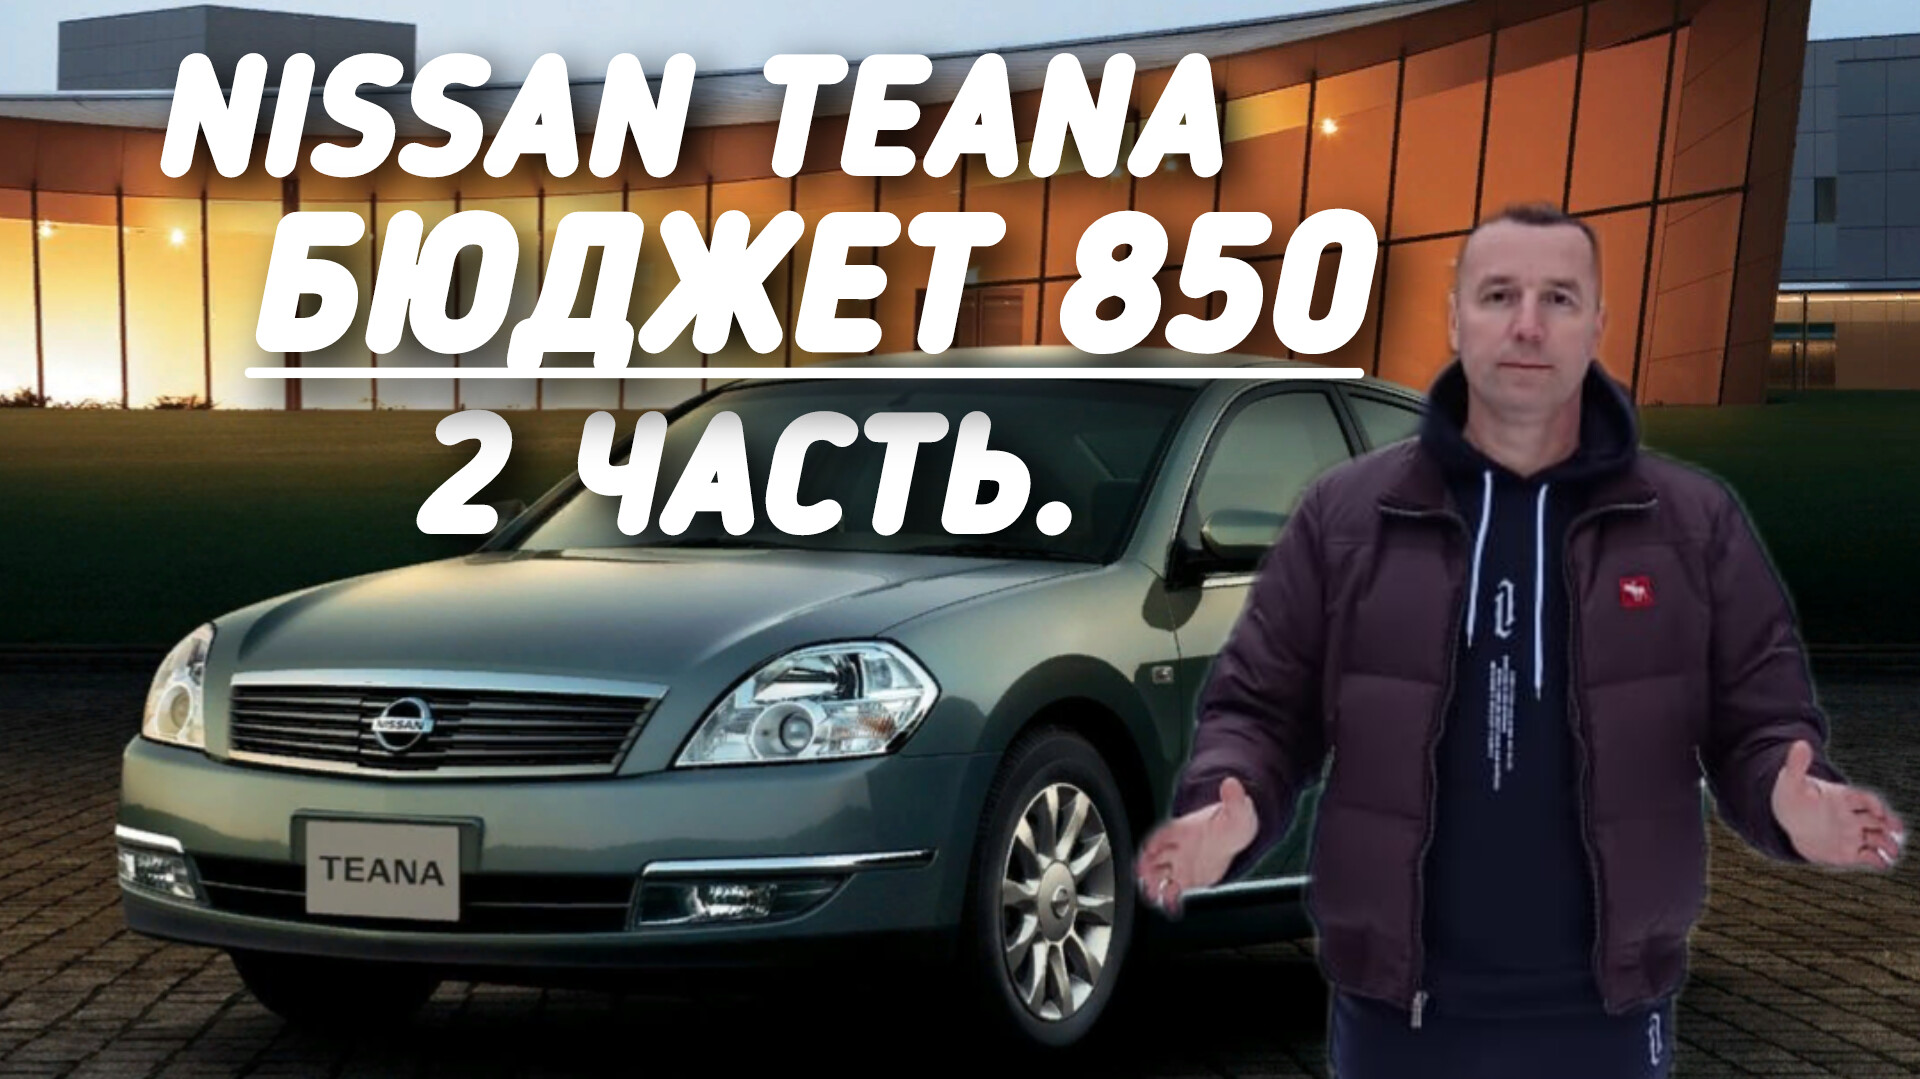 Nissan Teana БЮДЖЕТ 850.000руб.ВТОРАЯ ЧАСТЬ.